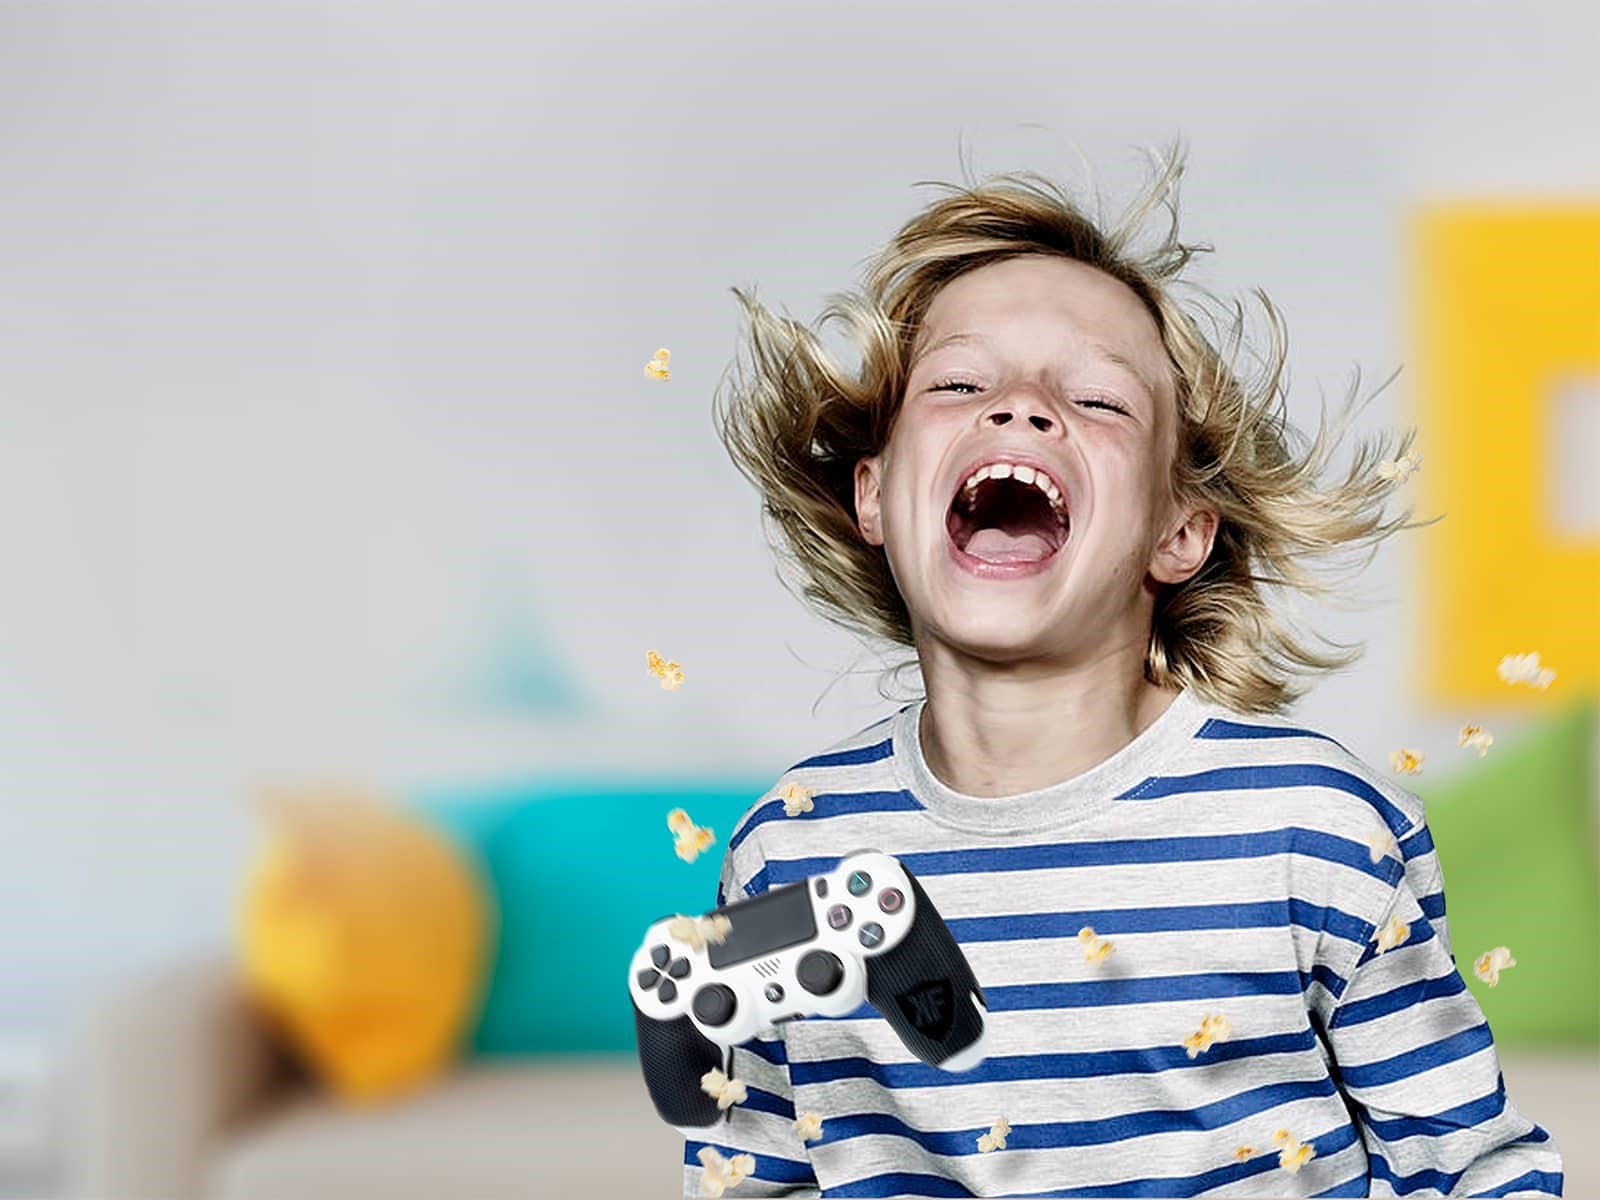 Dreng med controller er vildt glad, fordi han har 1000 mbit internet - det bedste internet til gaming.  Med 1000 mbit fiber bliver gaming til en leg.